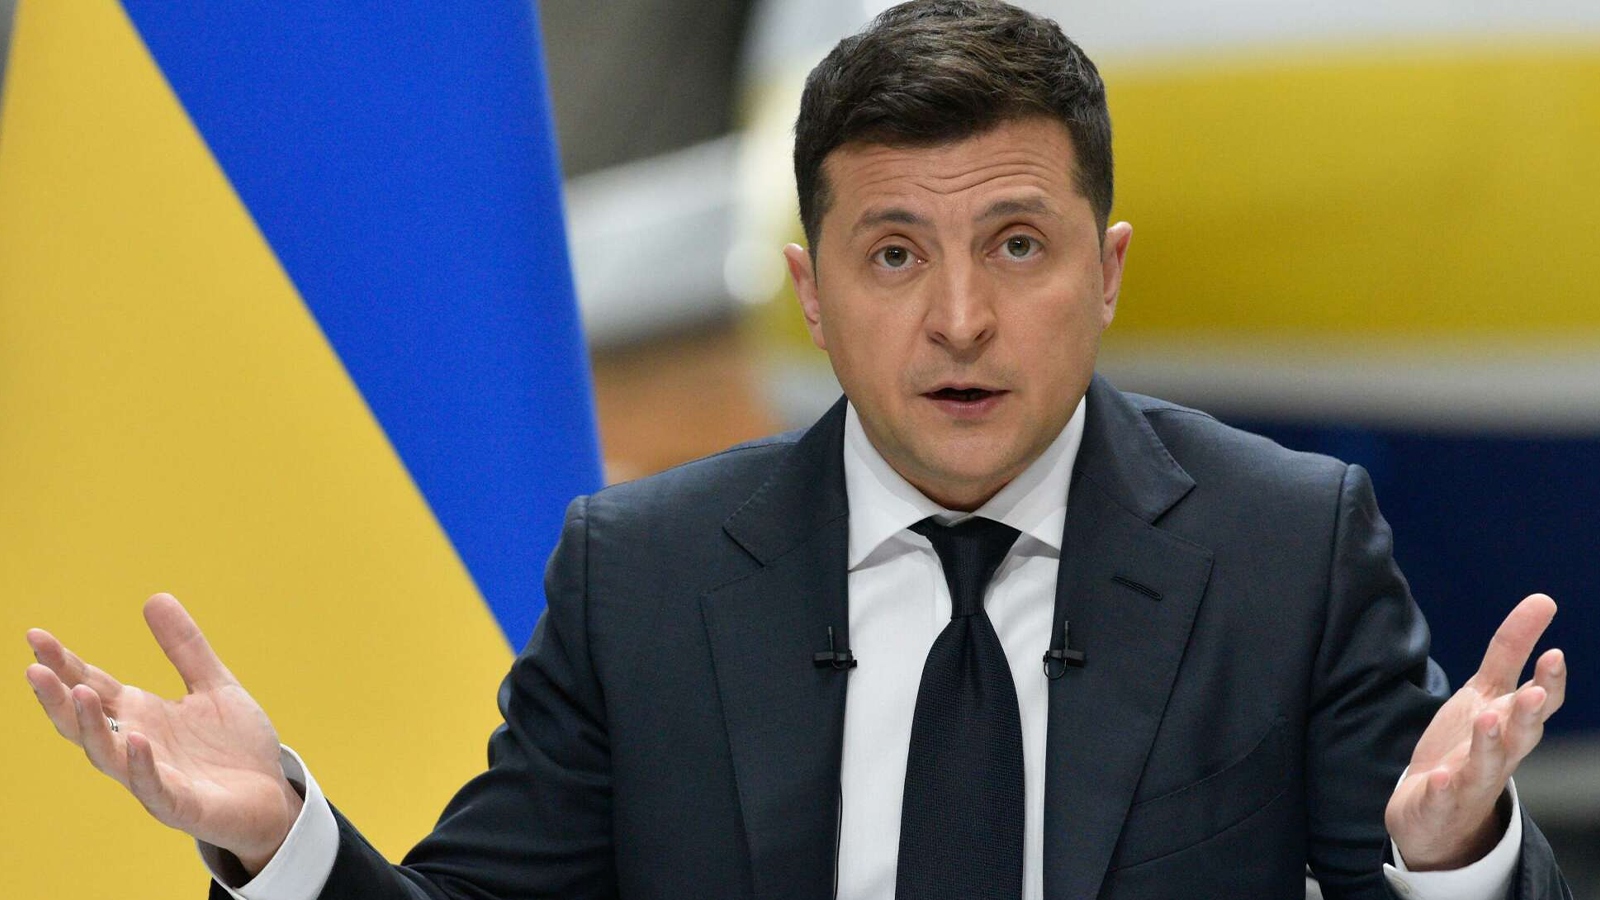 الرئيس الأوكراني يوجه خطابا للبرلمان الأوروبي